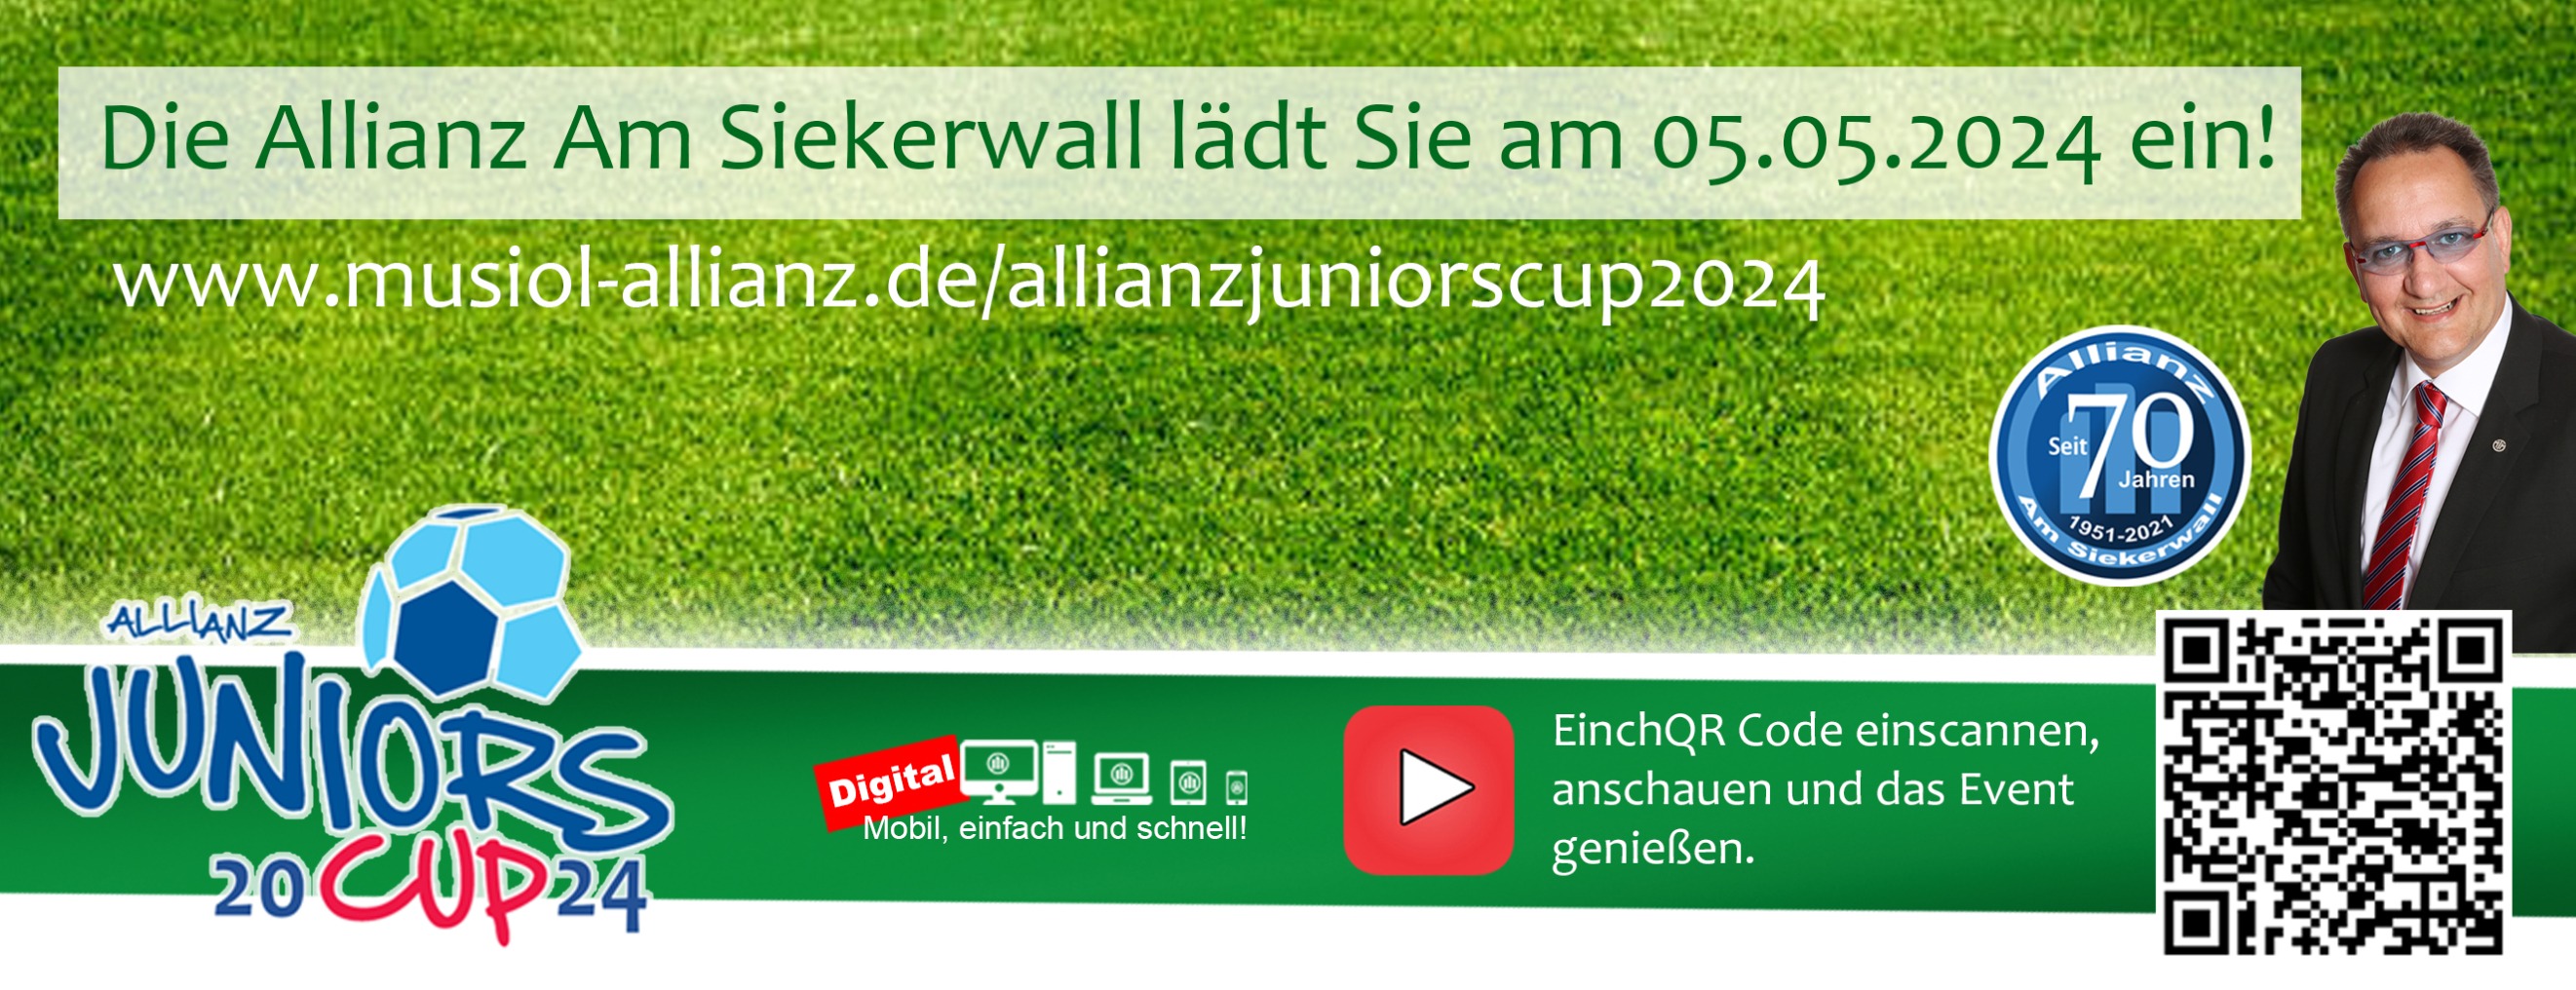 Allianz Versicherung Christian Horst Musiol Bielefeld - Allianz Juniors Cup 2024 am 05.05.2024